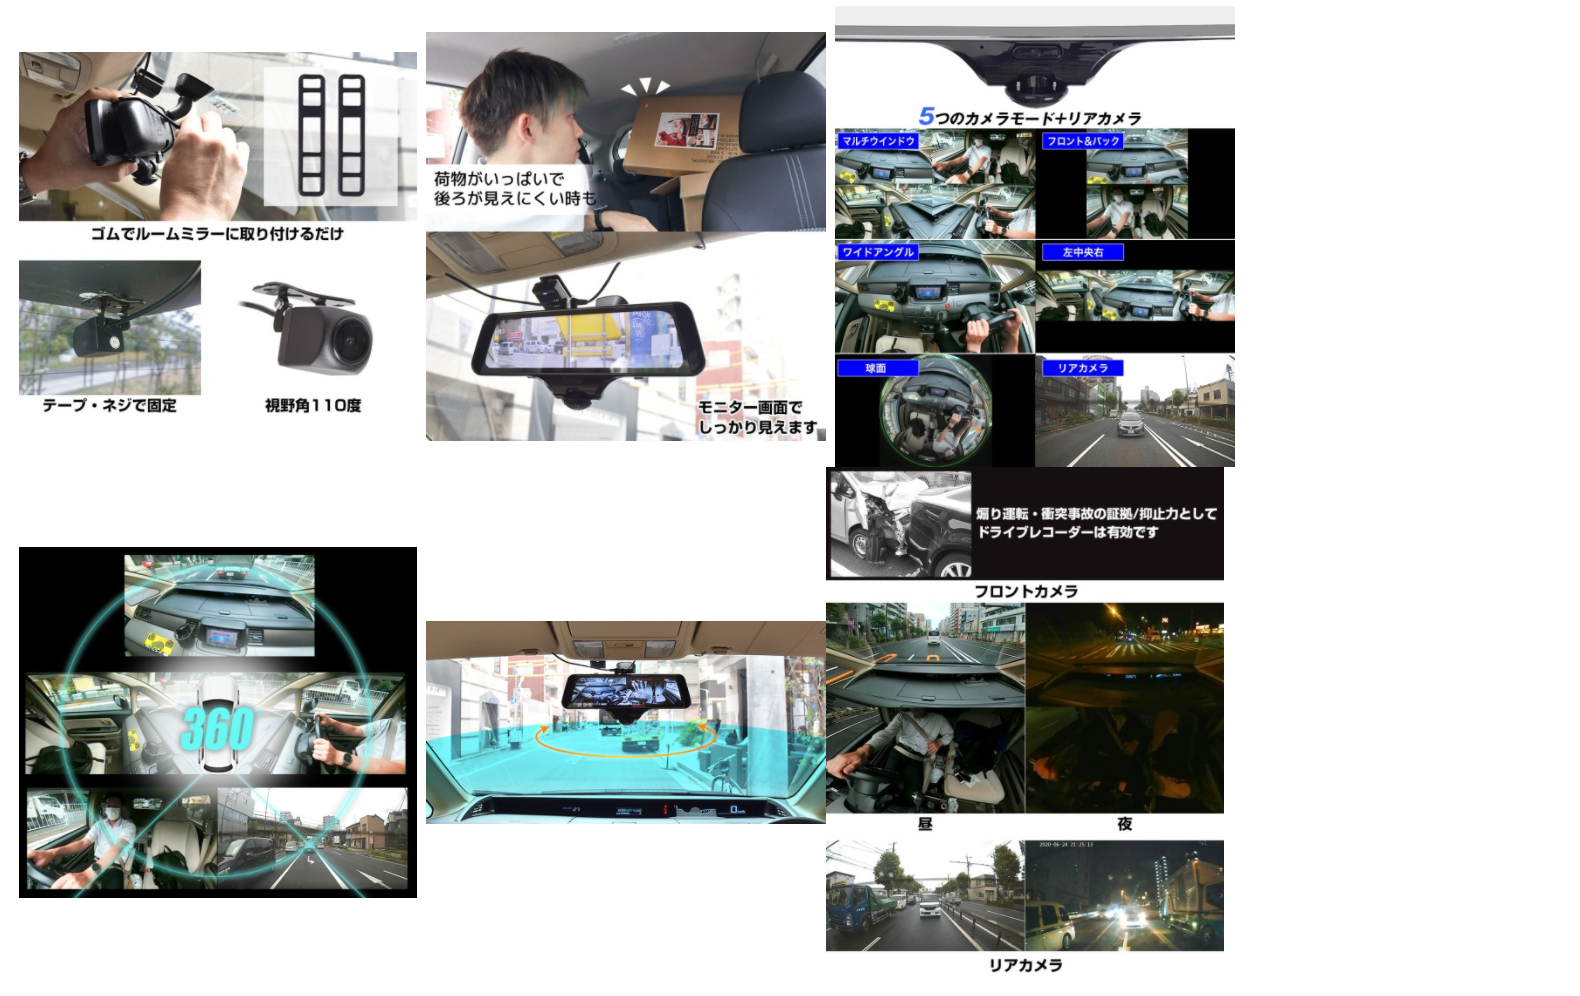 『ミラー型360度全方位ドライブレコーダー リアカメラ付き』を発売開始【サンコー】 | AEG 自動車技術者のための情報サイト